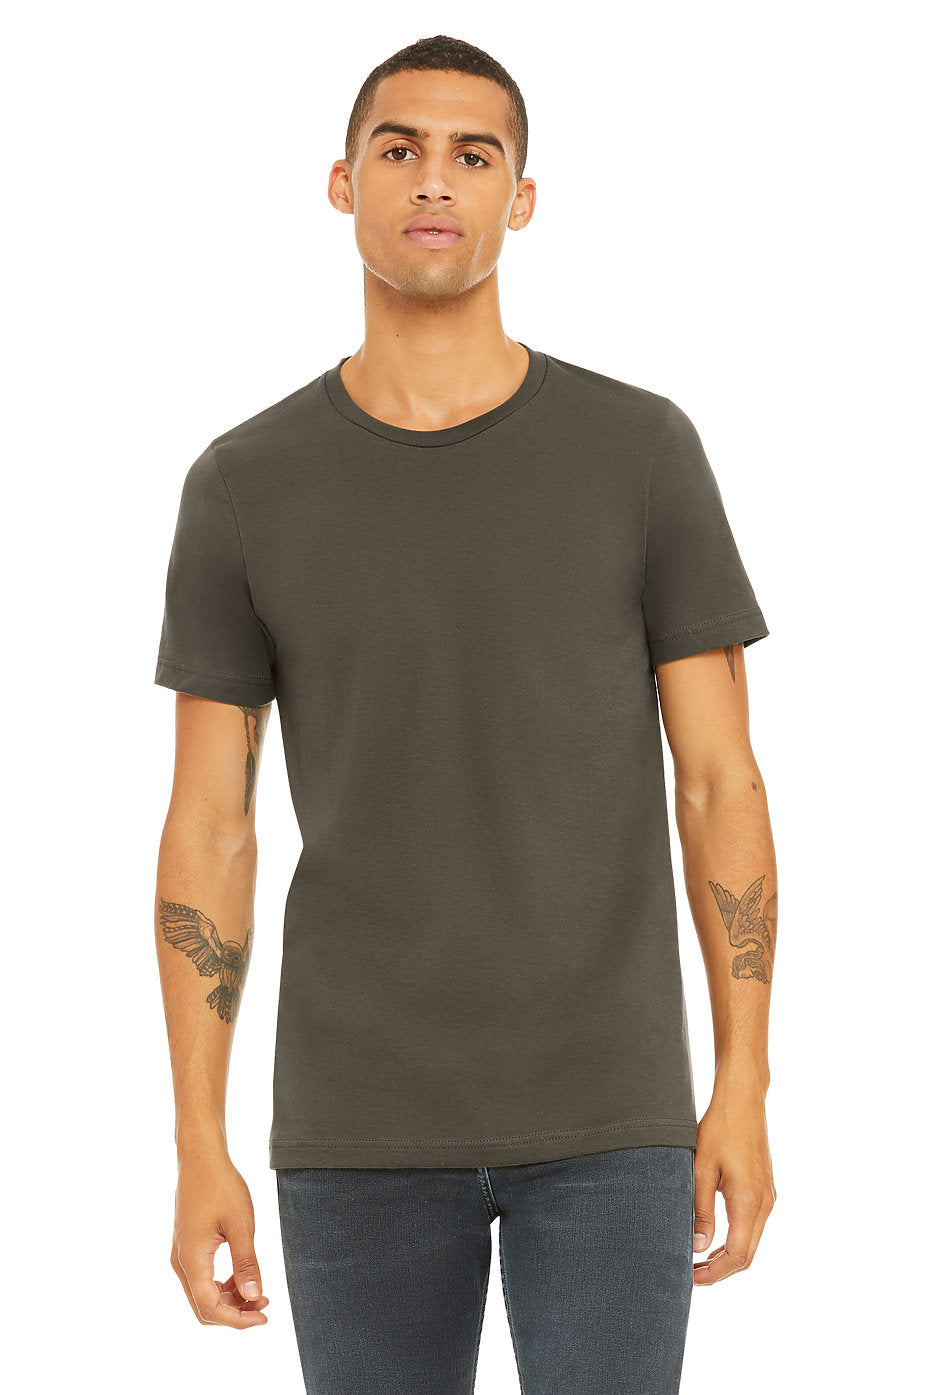 Bella + Canvas - Unisex Jersey Short-Sleeve T-Shirt-KELLY-3XL